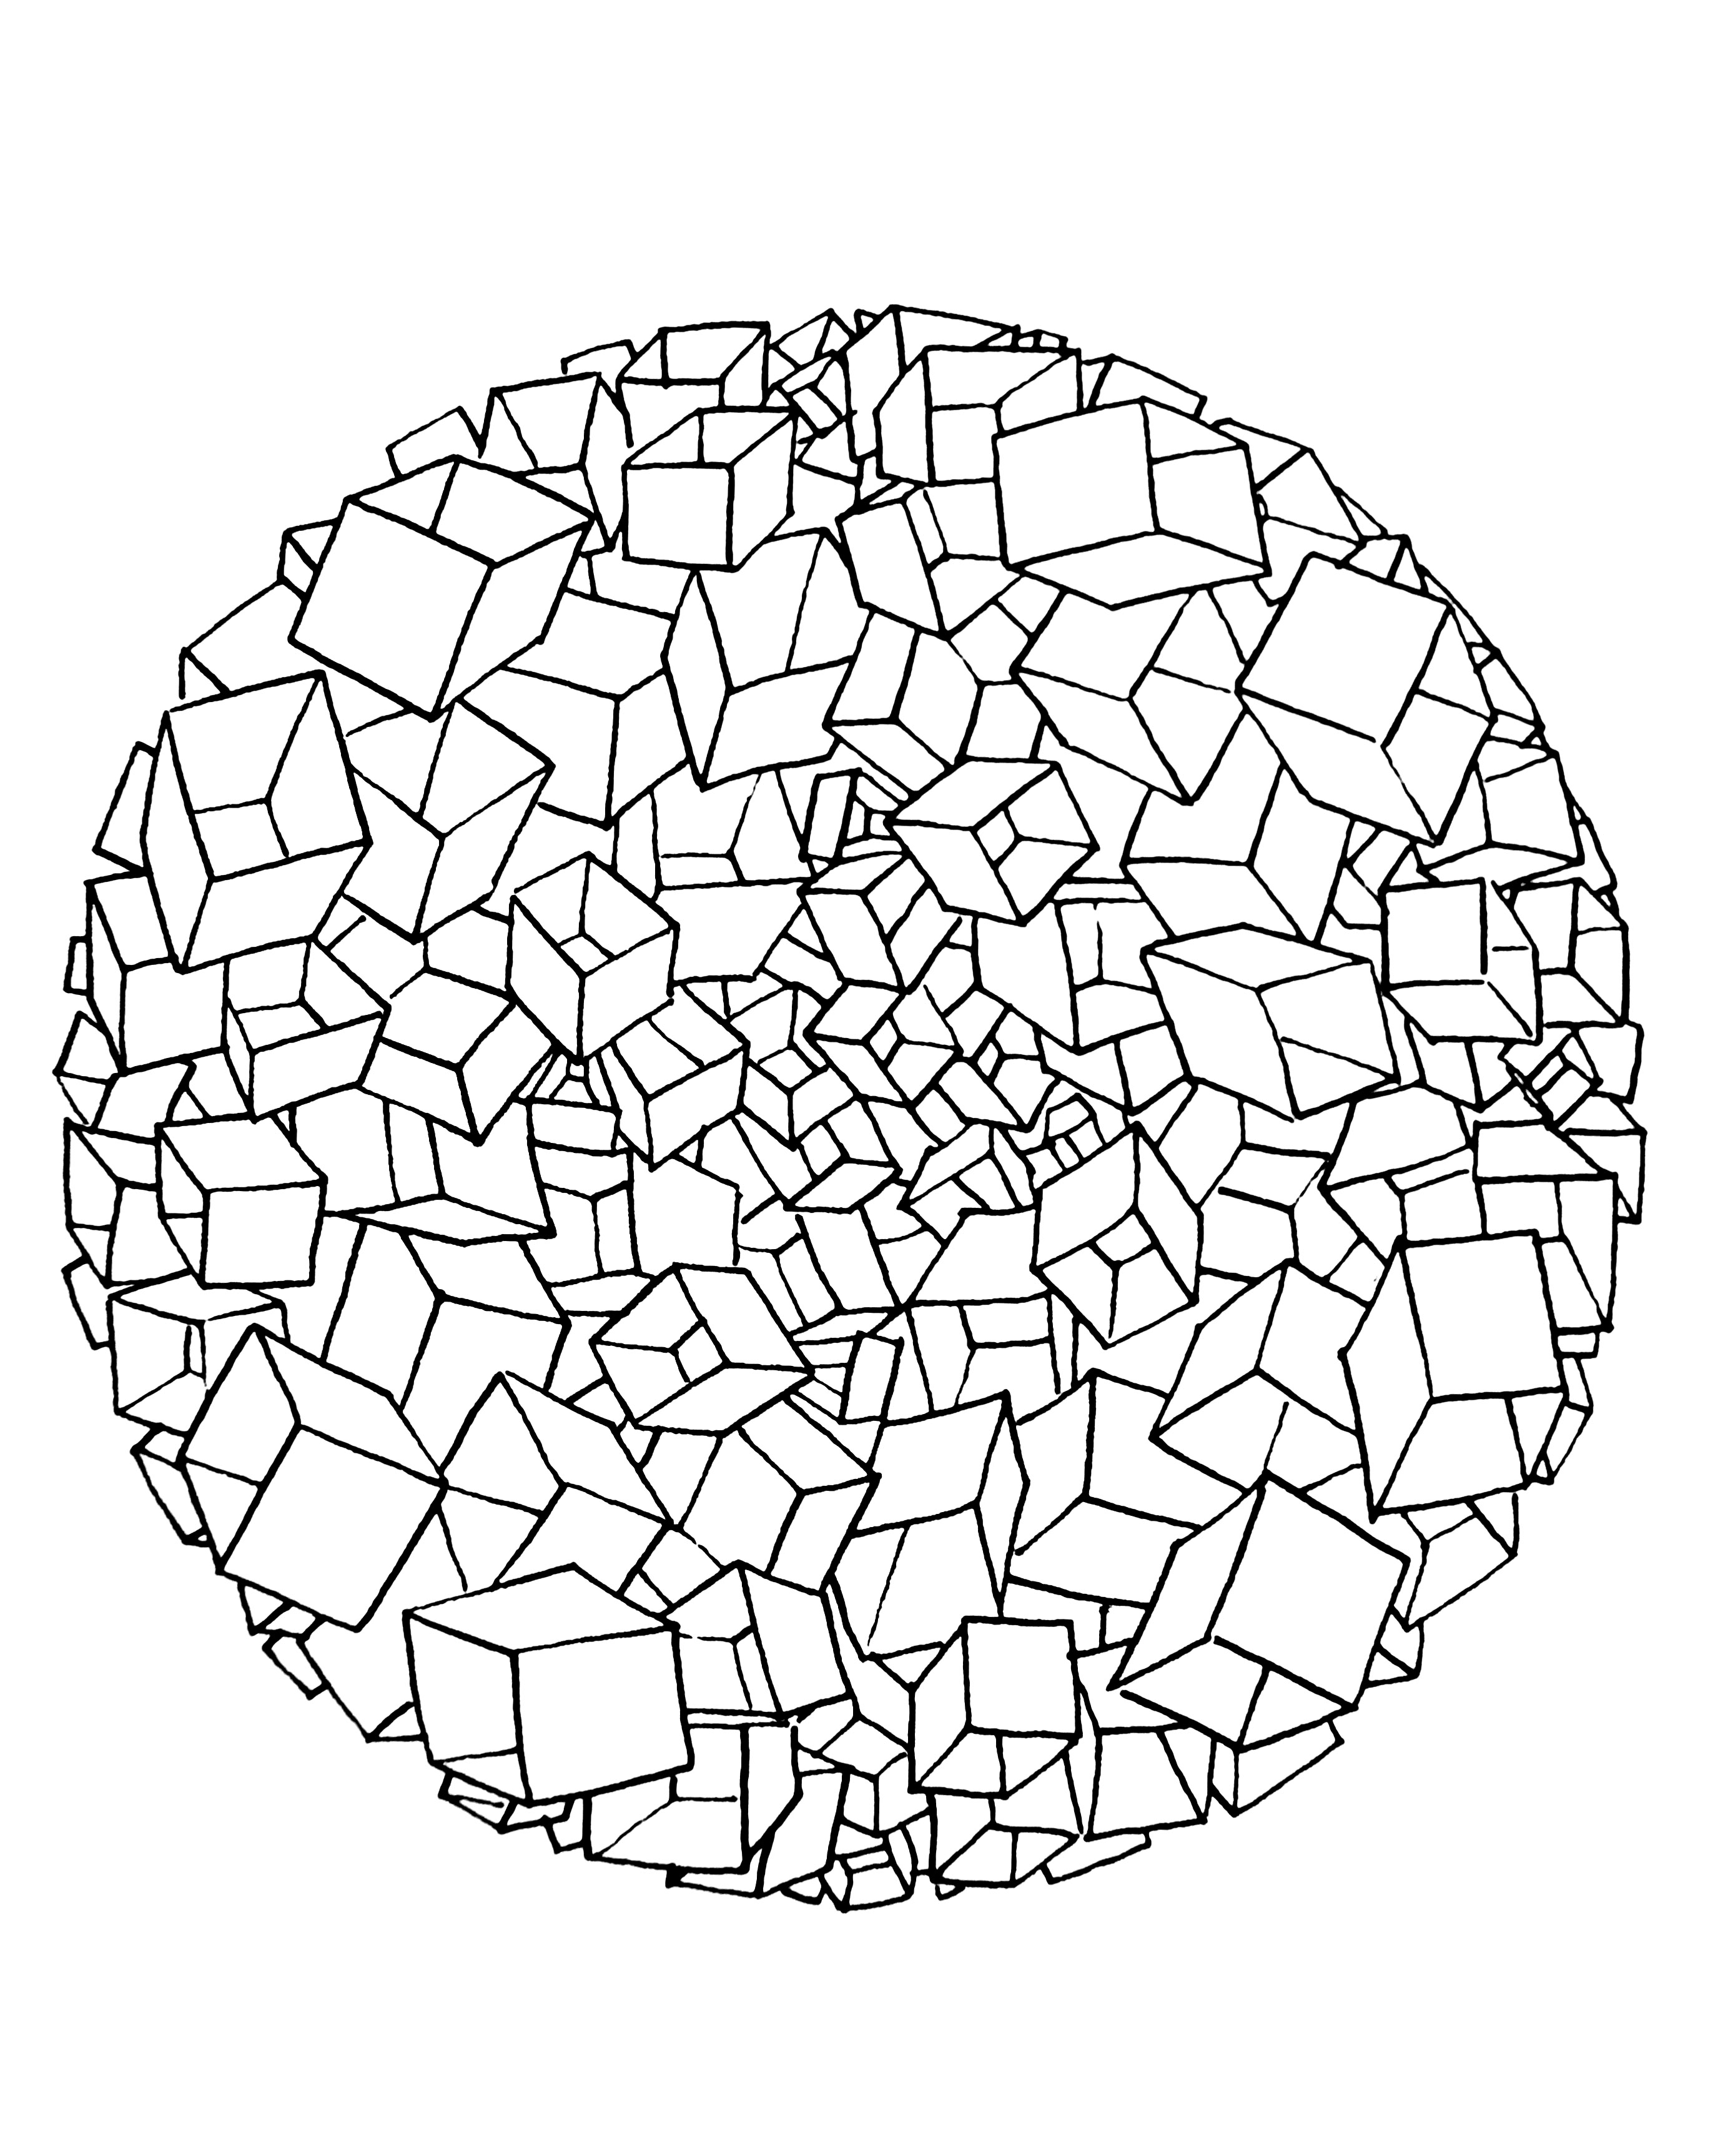 Mandala à colorier avec une succession de cubes répartis dans l'intégralité du dessin. Assez difficile.